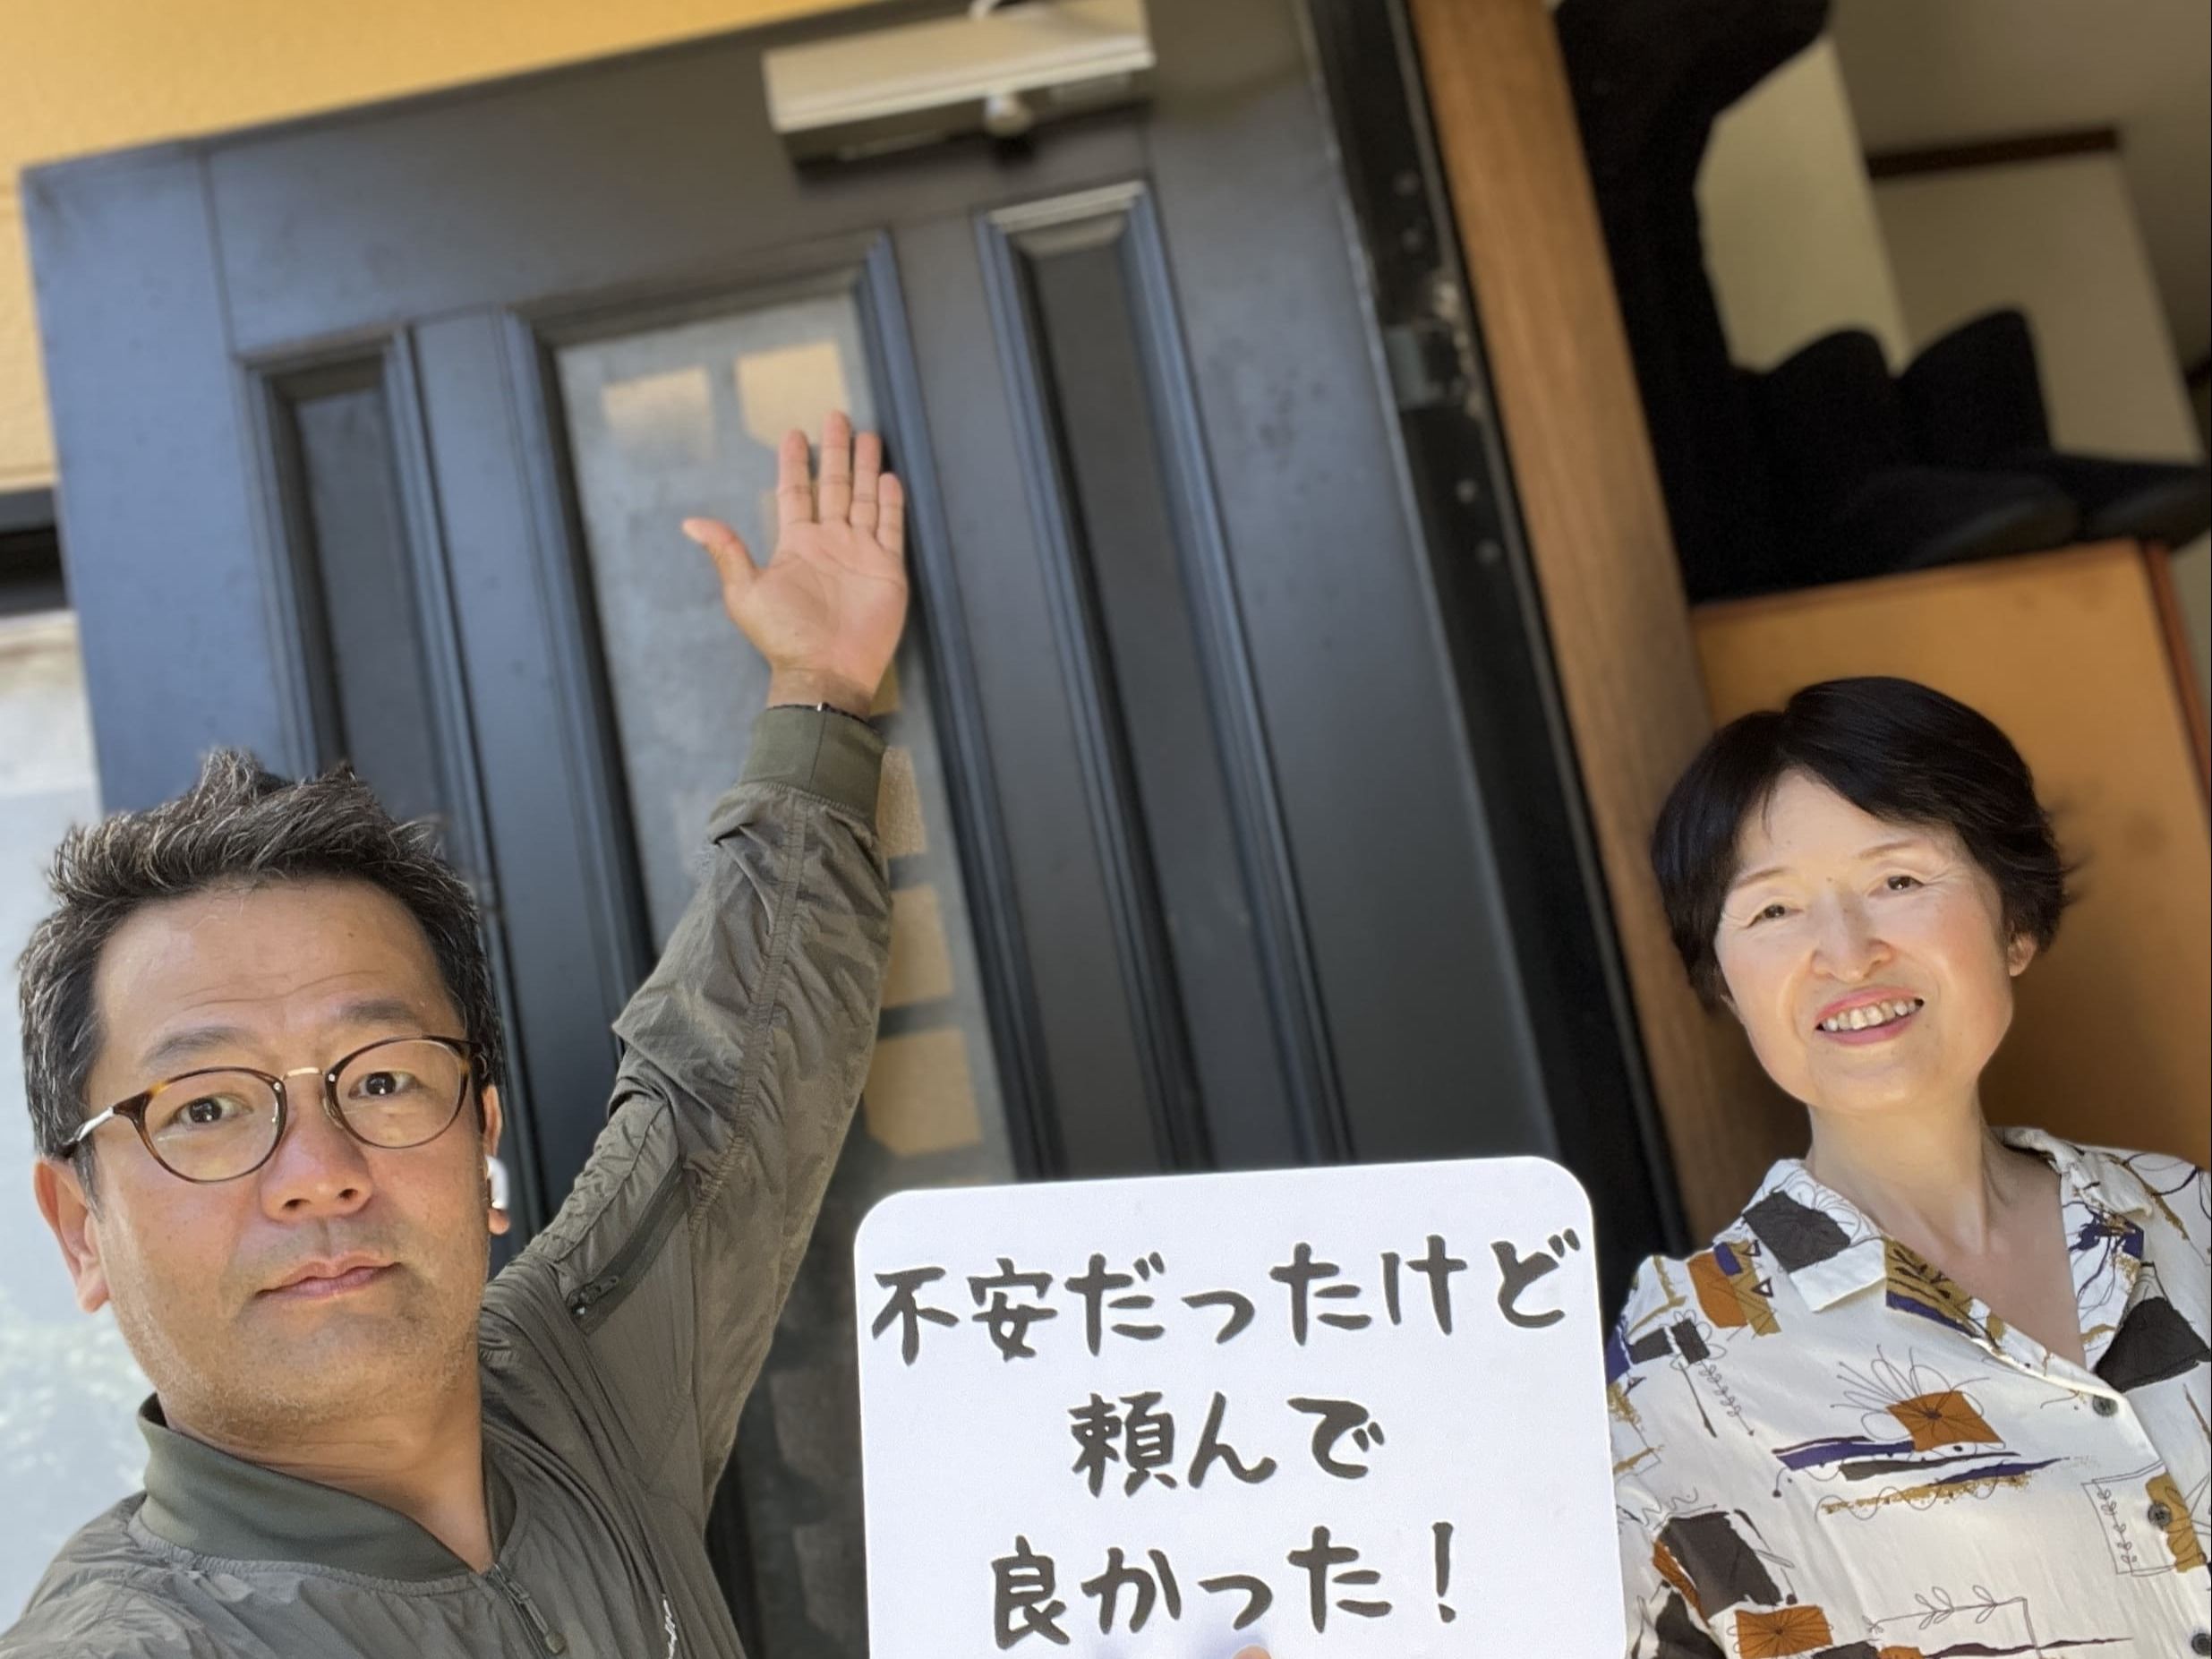 【狛江市地域】カギとドア修理コバヤシの店内・外観画像3